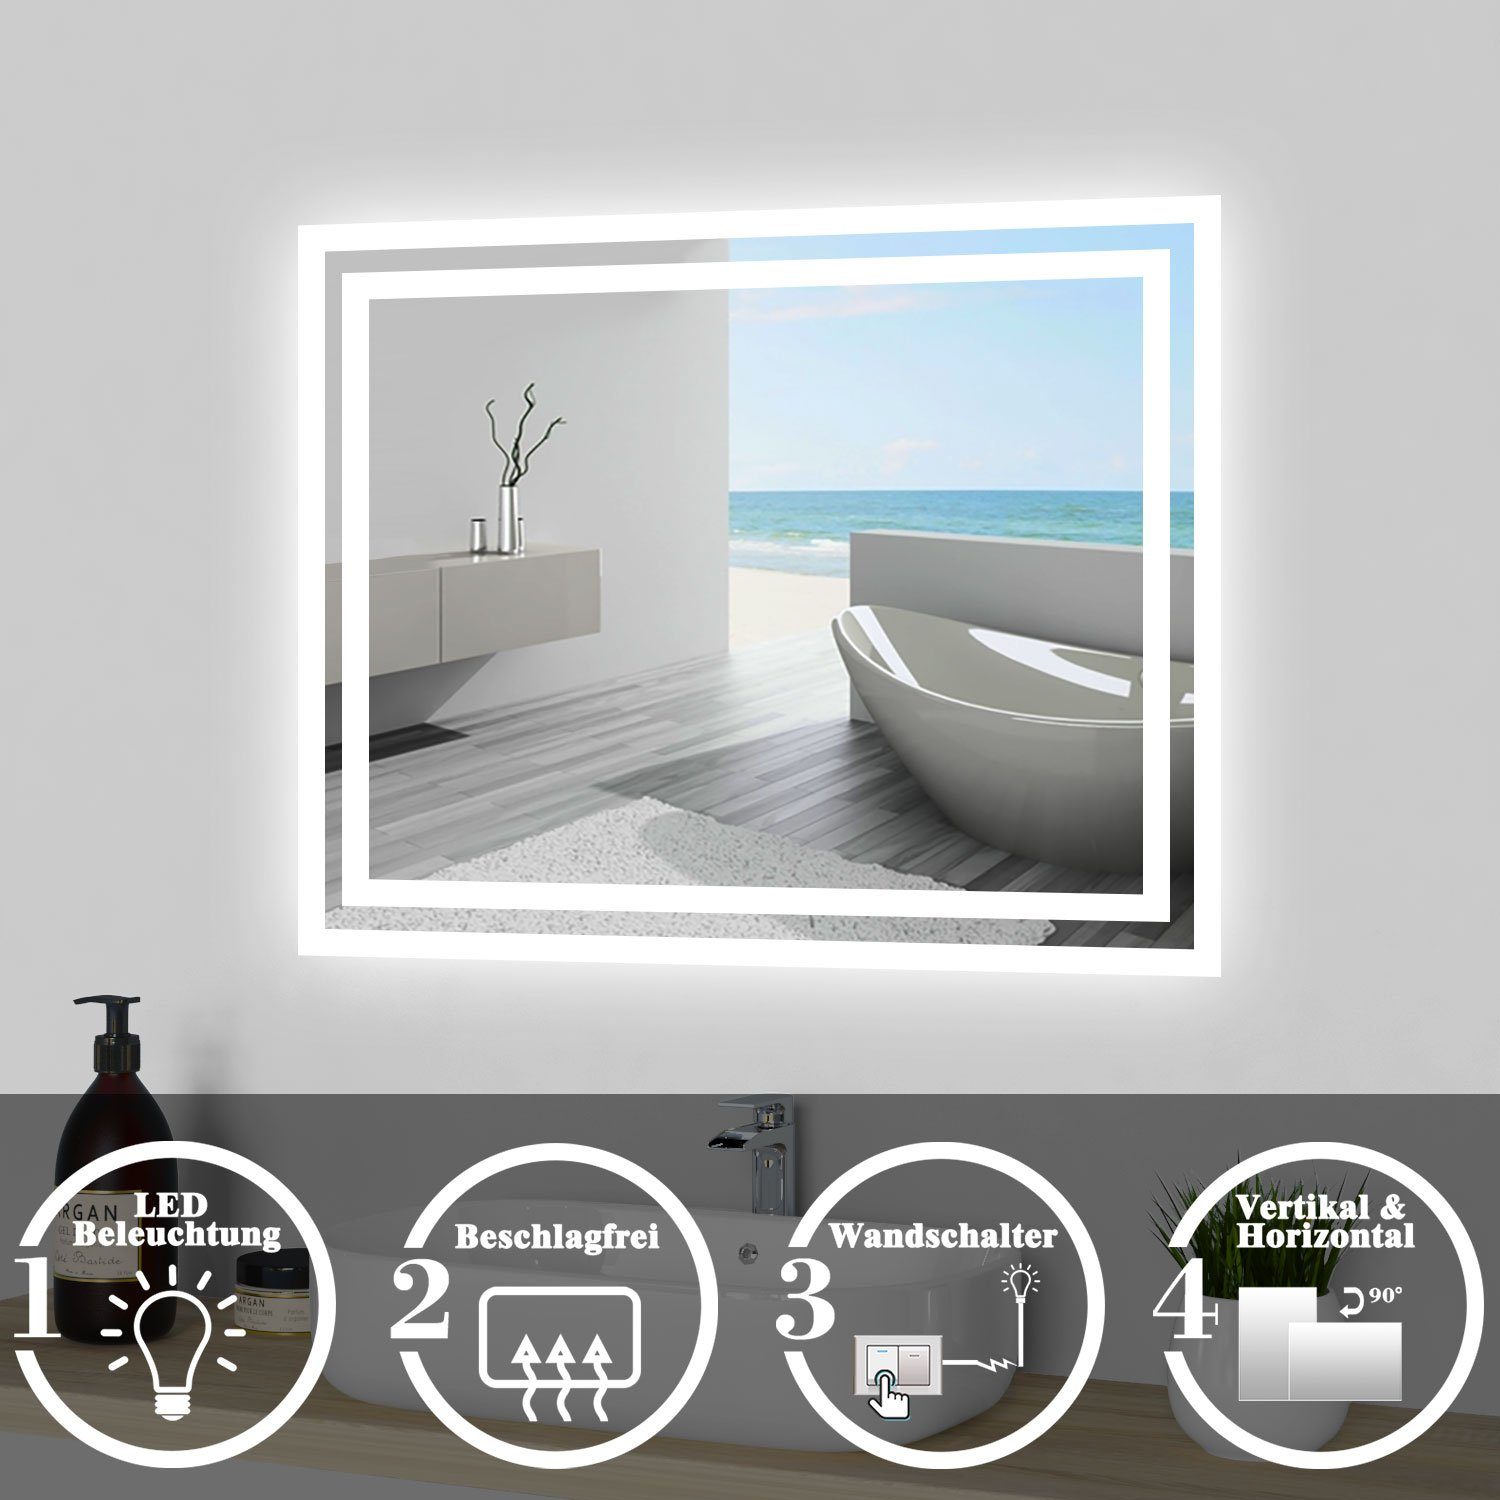 Wandschalter+Beschlagfrei LED Beleuchtung Badspiegel duschspa Spiegel 60x50 bis mit cm, 160x80 cm